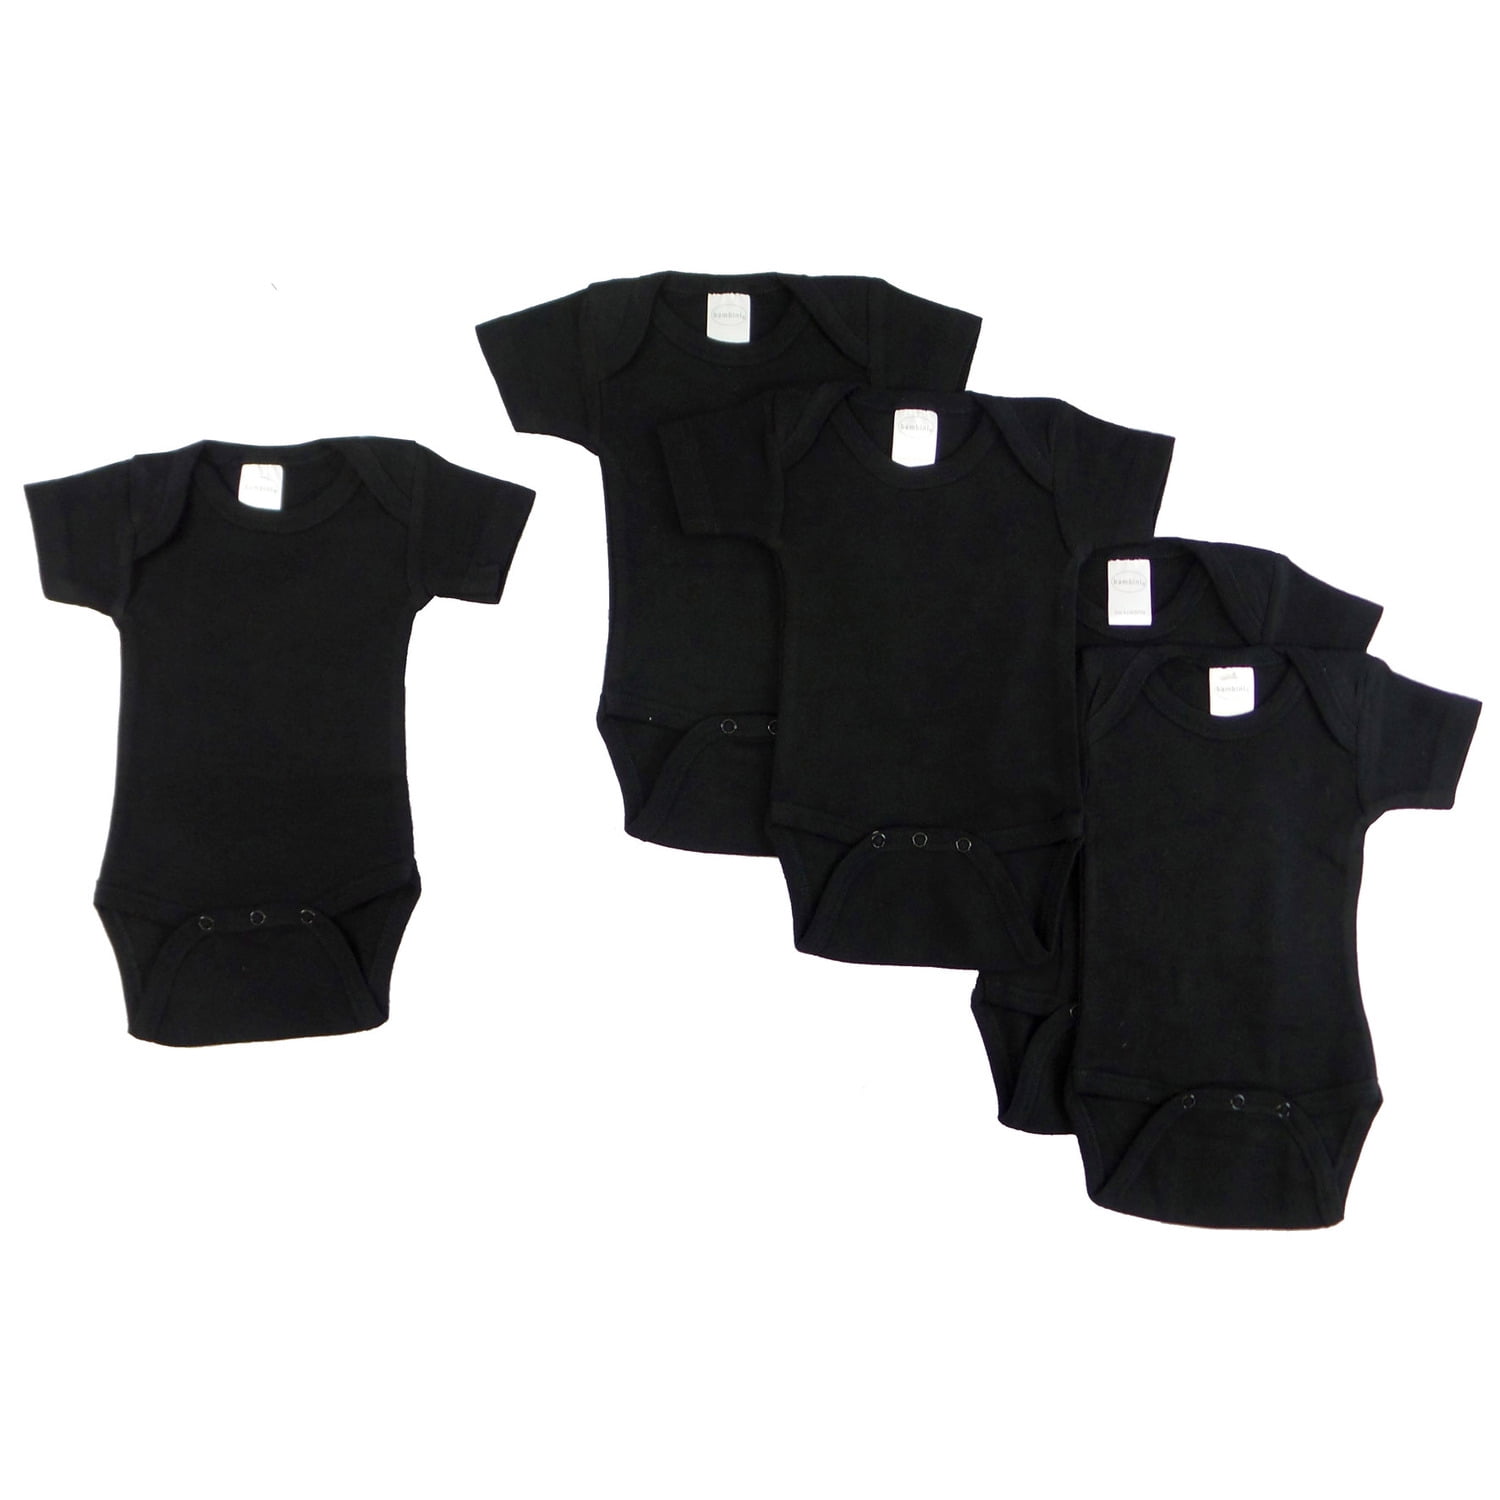 0010bl5-l Short Sleeve - Black, Large - Pack Of 5